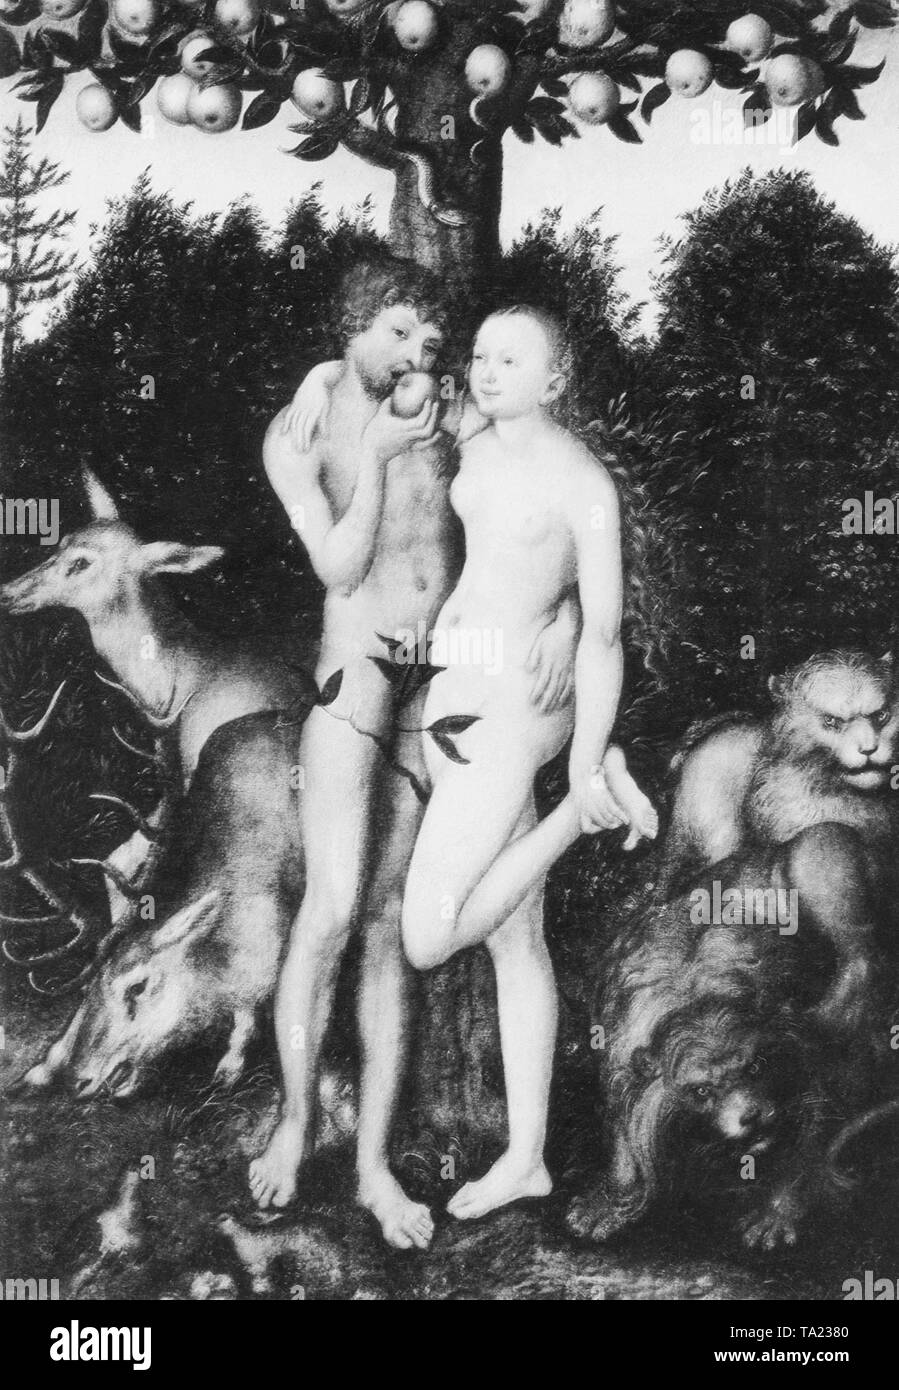 La chute d'Adam et Eve dans le paradis. D'après une peinture de Lucas Cranach à partir de l'année 1531. Banque D'Images